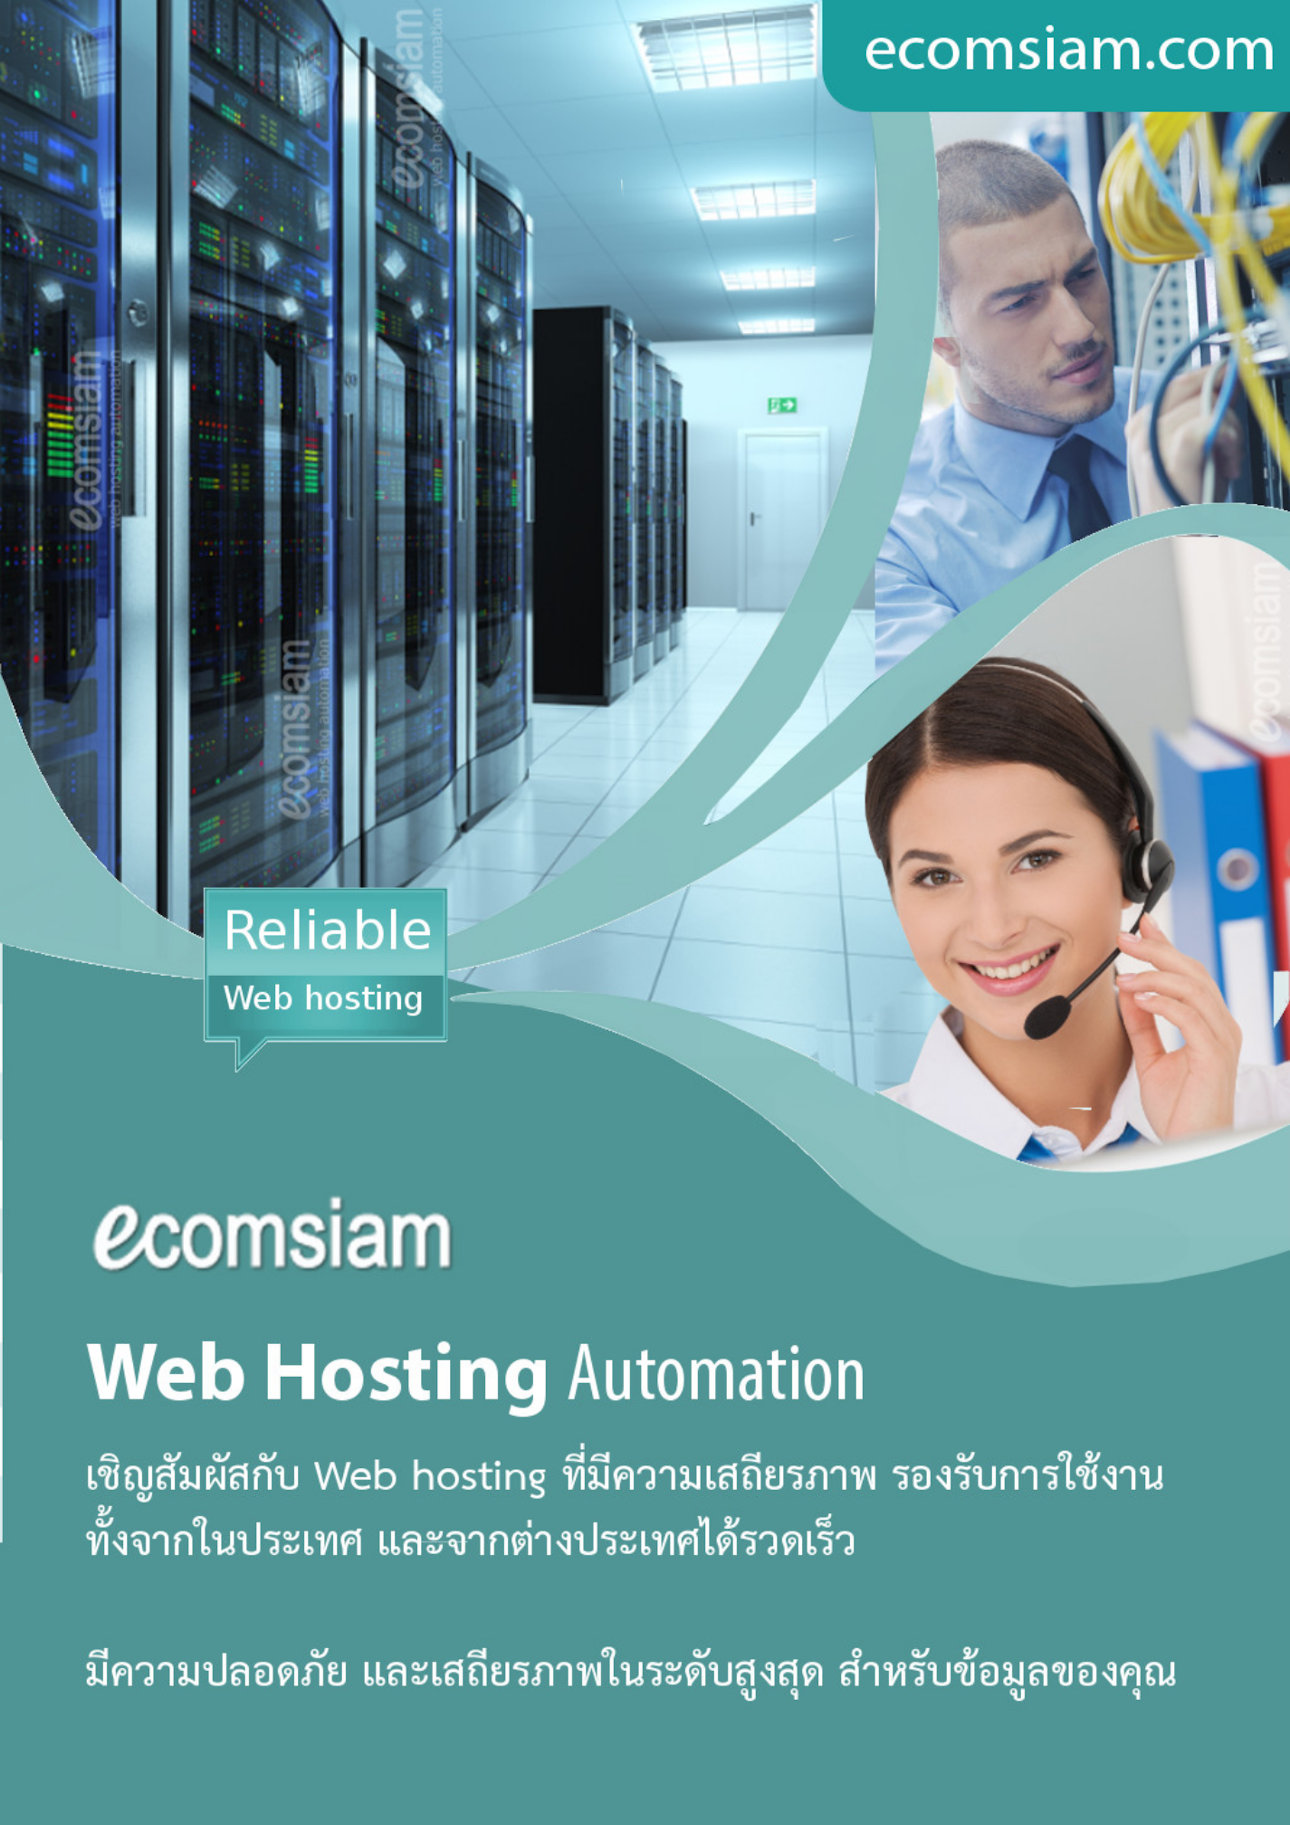 โบรชัวรบริการ  Web Hosting thai คุณภาพ บริการดี พื้นที่มาก  คุณภาพสูง  hosting ฟรีโดเมน ฟรี SSL ระบบควบคุมจัดการ Web hosting ไทย ที่ง่าย สะดวก และปลอดภัย อีเมลและเว็บไซต์สำหรับธุรกิจของคุณ มีระบบเก็บ log file ตามกฏหมาย มีความปลอดภัยในการใช้งาน พร้อมมีระบบสำรองข้อมูลรายวัน (daily backup) และ สำรองข้อมูลรายสัปดาห์ (weekly backup) ระบบป้องกันไวรัสจากอีเมล์ (virus protection) พร้อมระบบกรองสแปมส์เมล์หรือกรองอีเมล์ขยะ (Spammail filter) เริ่มต้นเพียง 2,200 บาทต่อปี  โทร.หาเราตอนนี้เลย  02-9682665   บริการลูกค้าดี ดูแลดี  แนะนำเว็บโฮสติ้ง โดย webhostthai.com